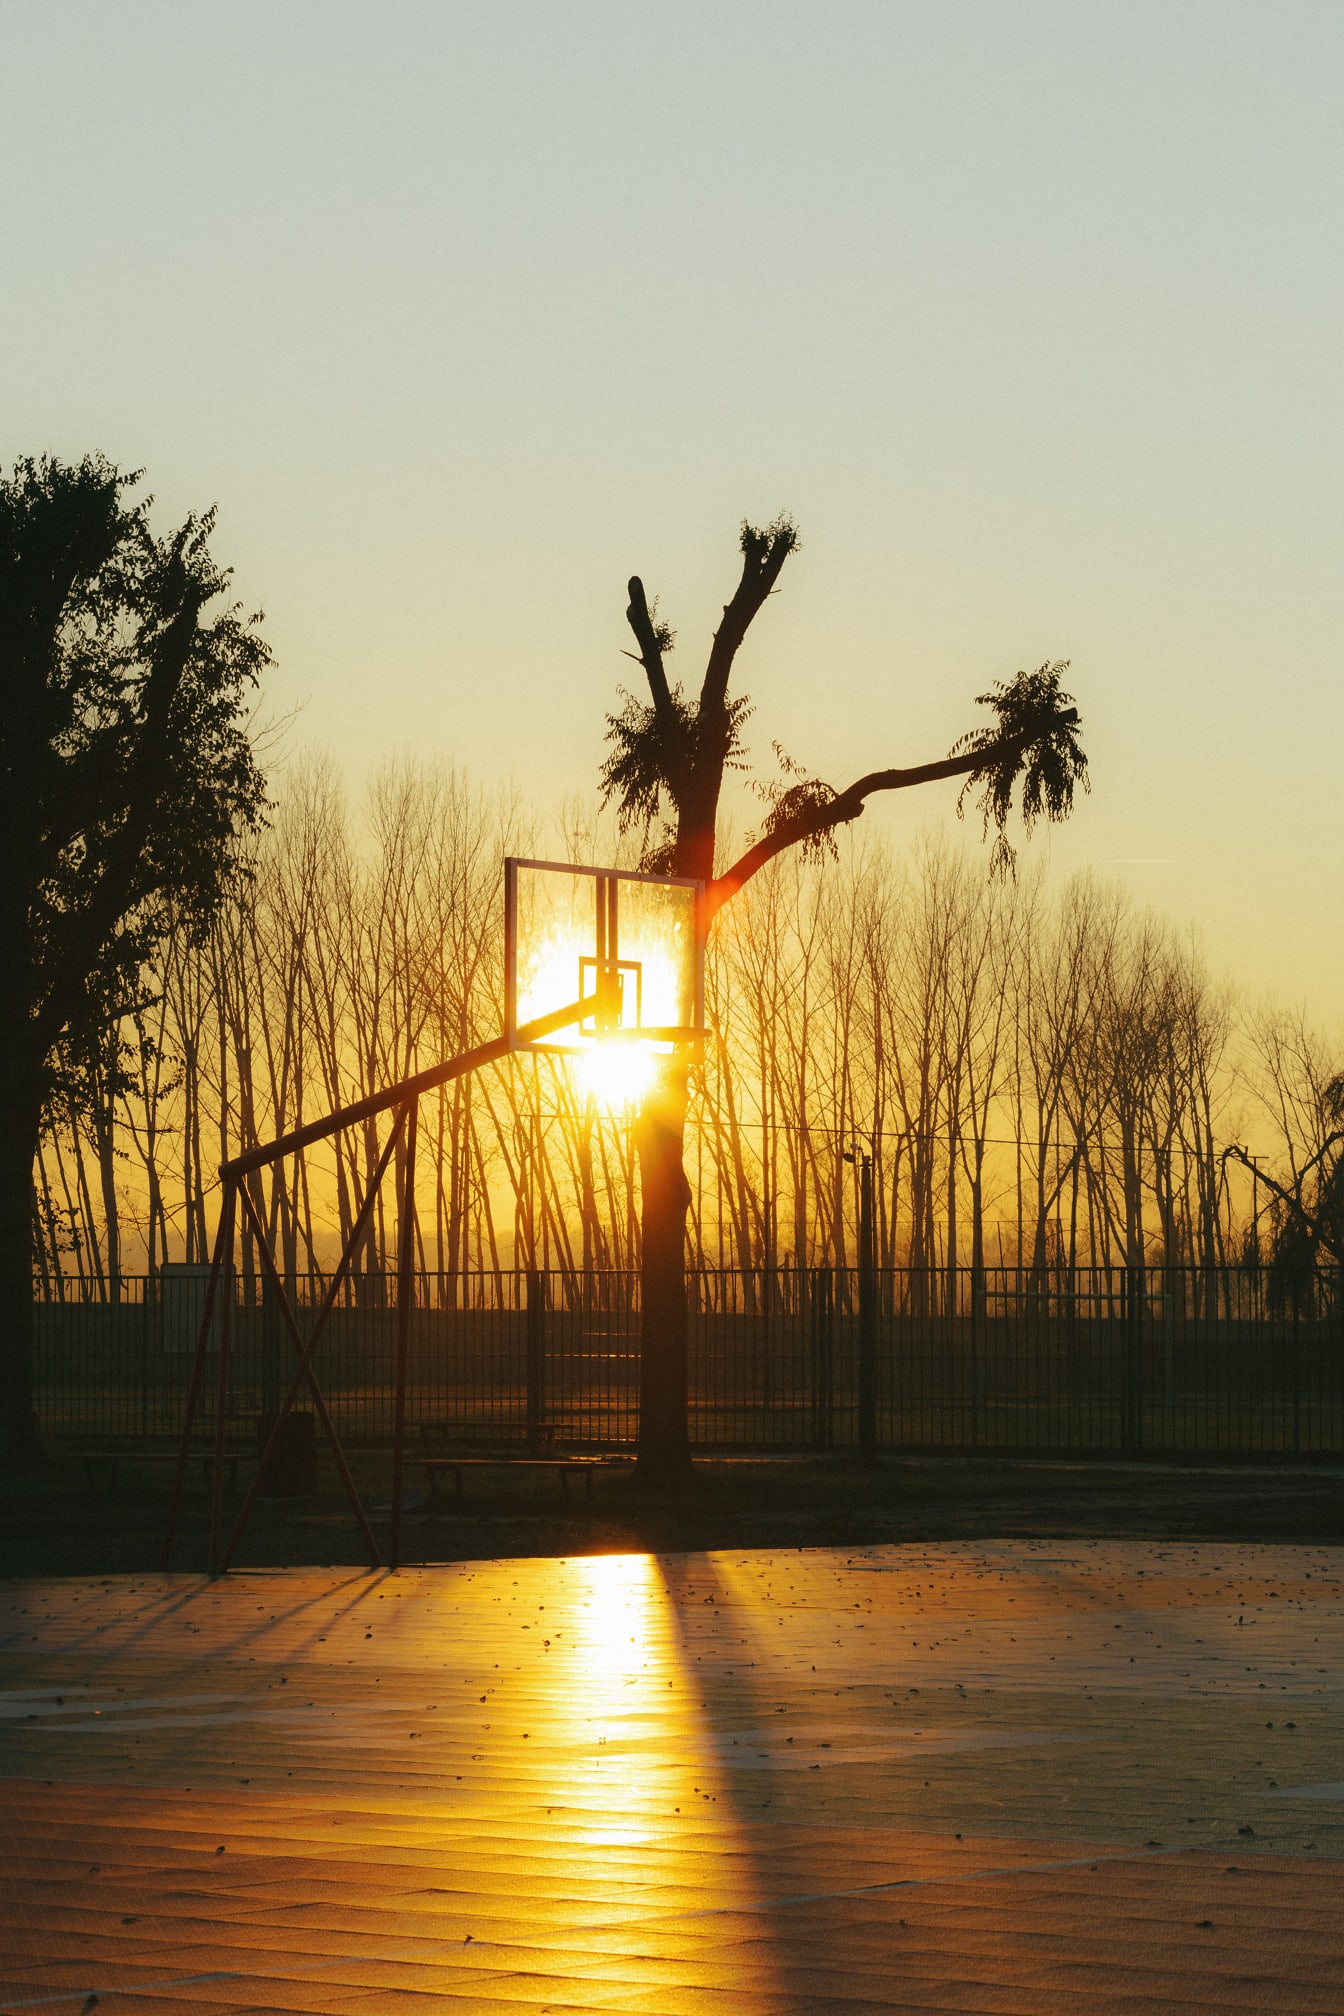 Basketbol potasında güneş ışınları ile gün doğumunda altın saatte basketbol sahası